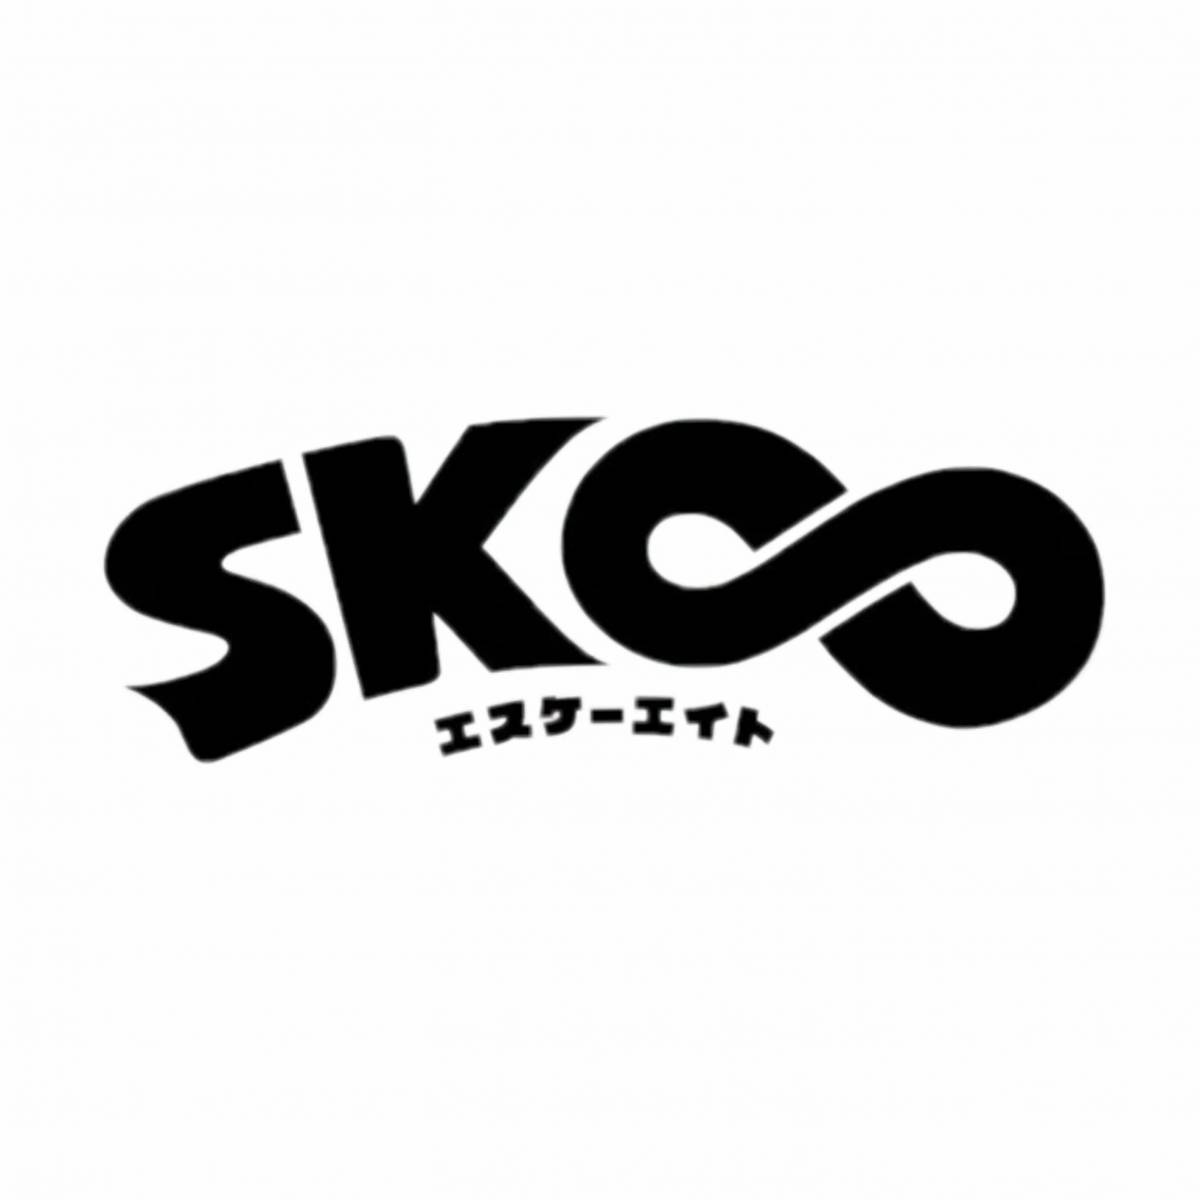 Скейт бесконечность фф. Скейт бесконечность логотип sk8. Стикеры скейт бесконечность. Наклейки на скейт.